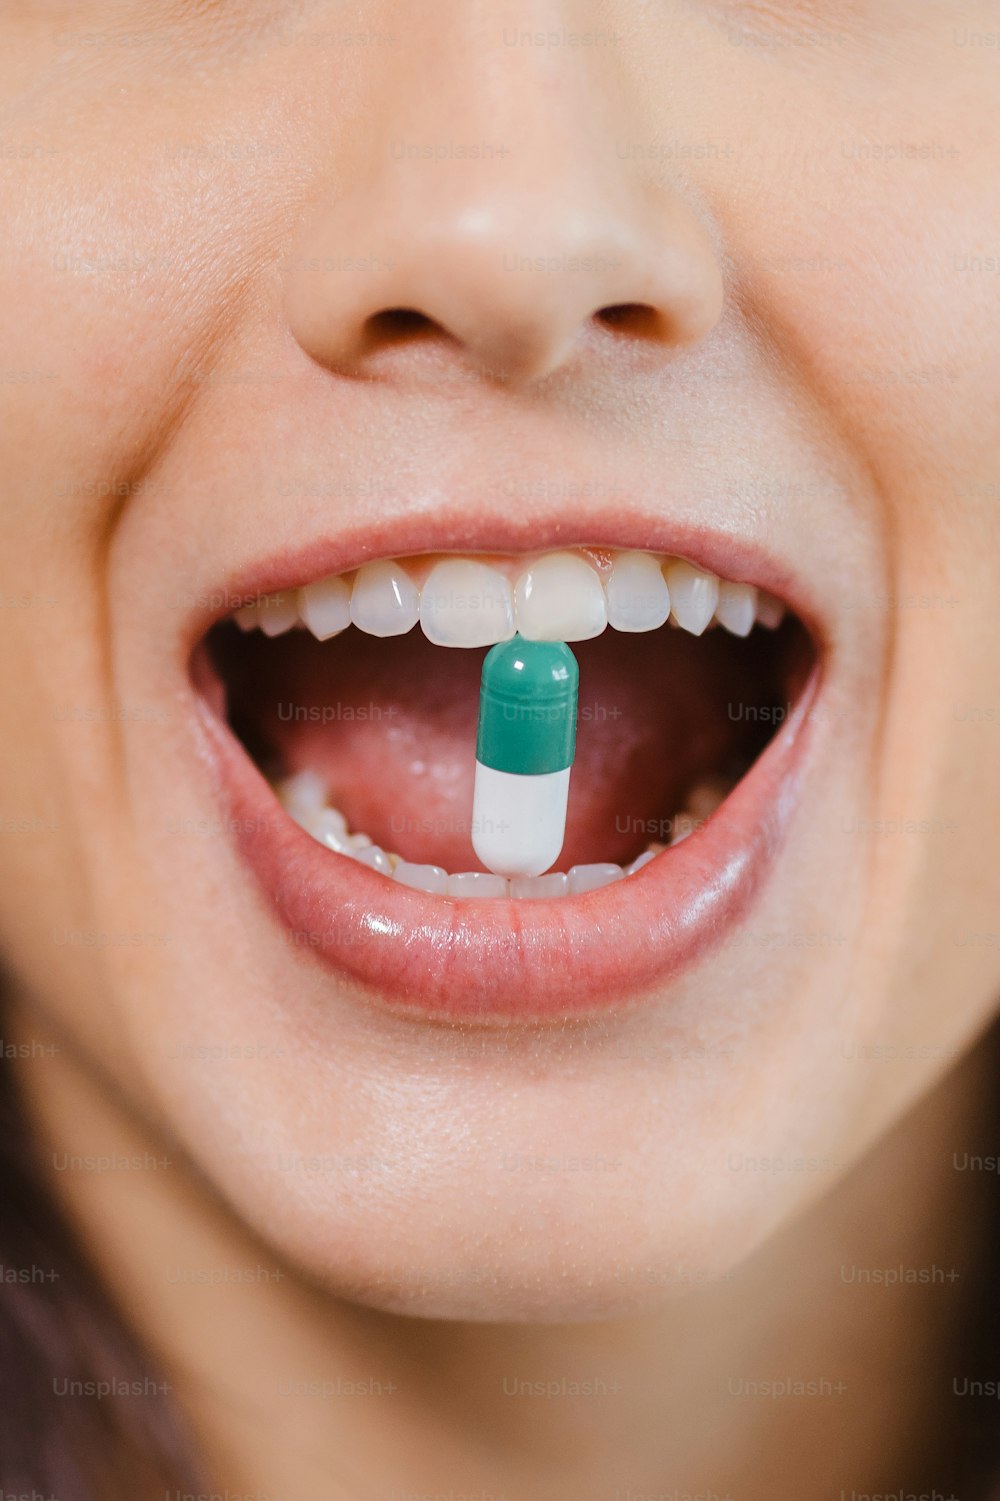 Una mujer con una píldora verde y blanca en la boca